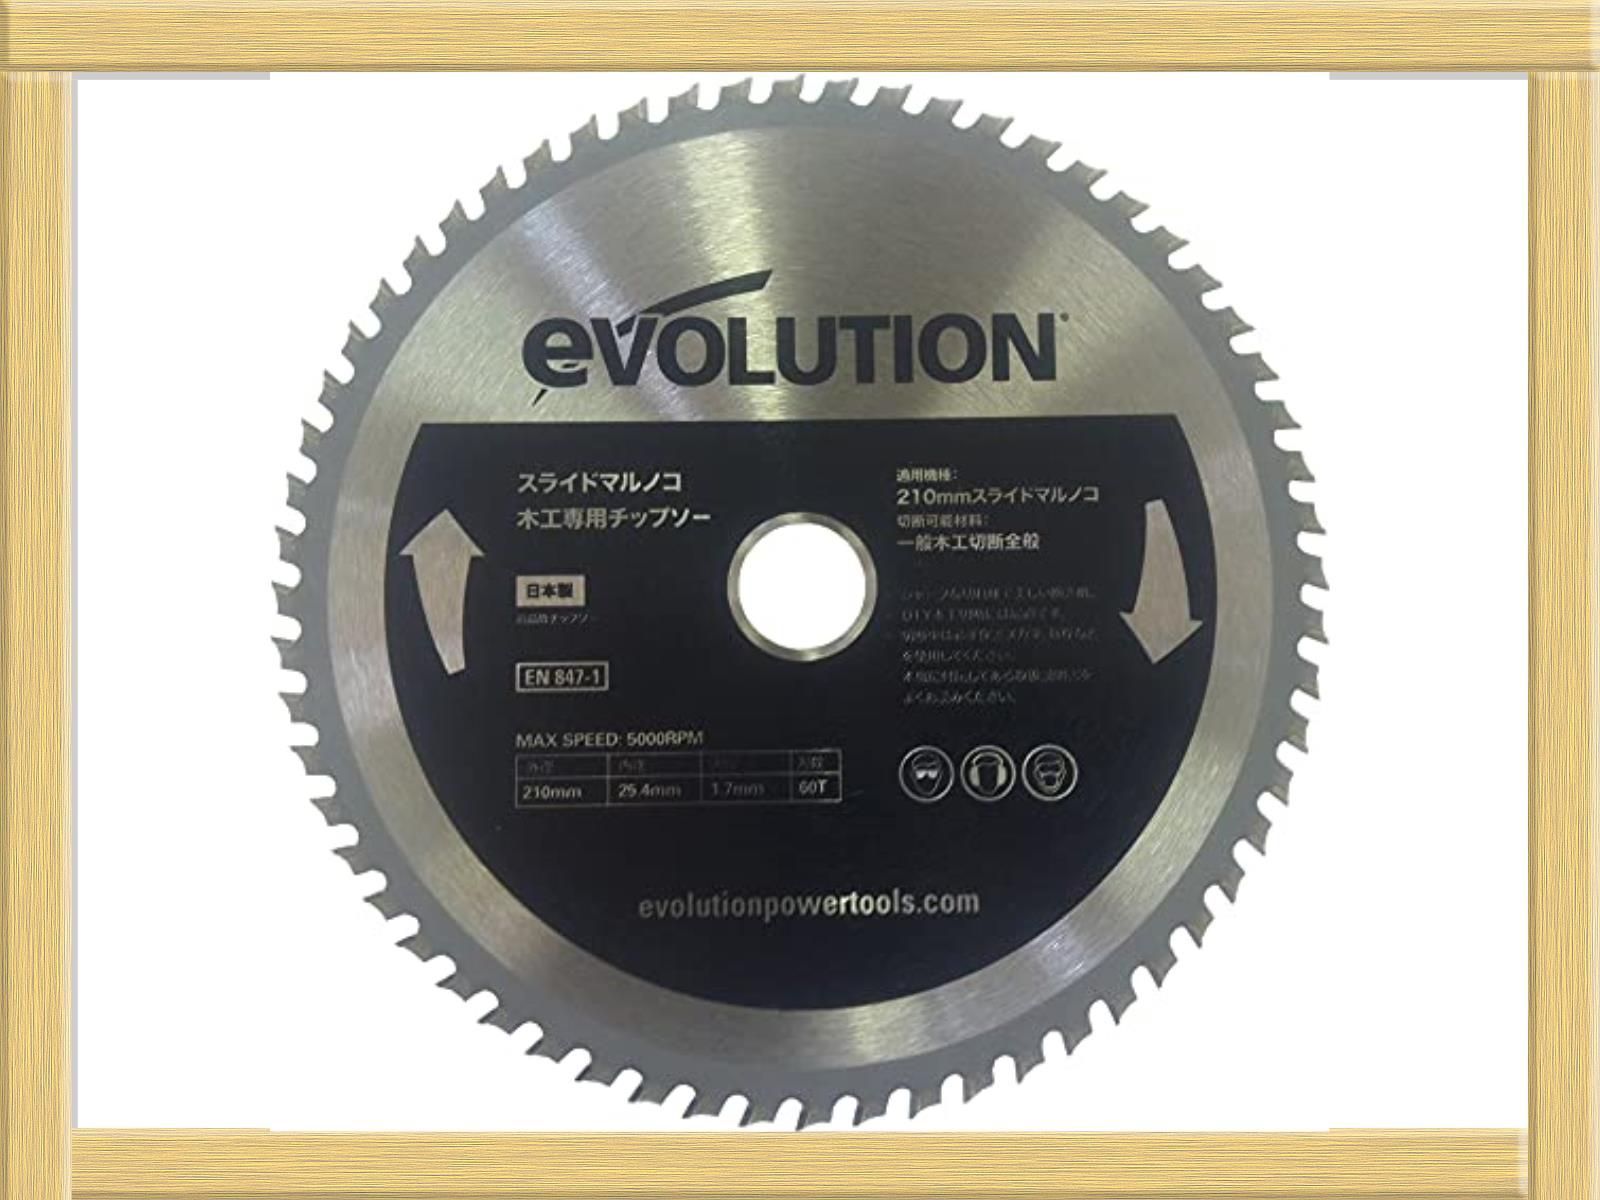 evolution(エボリューション) FURY 210mm木工専用チップソ- ブラック